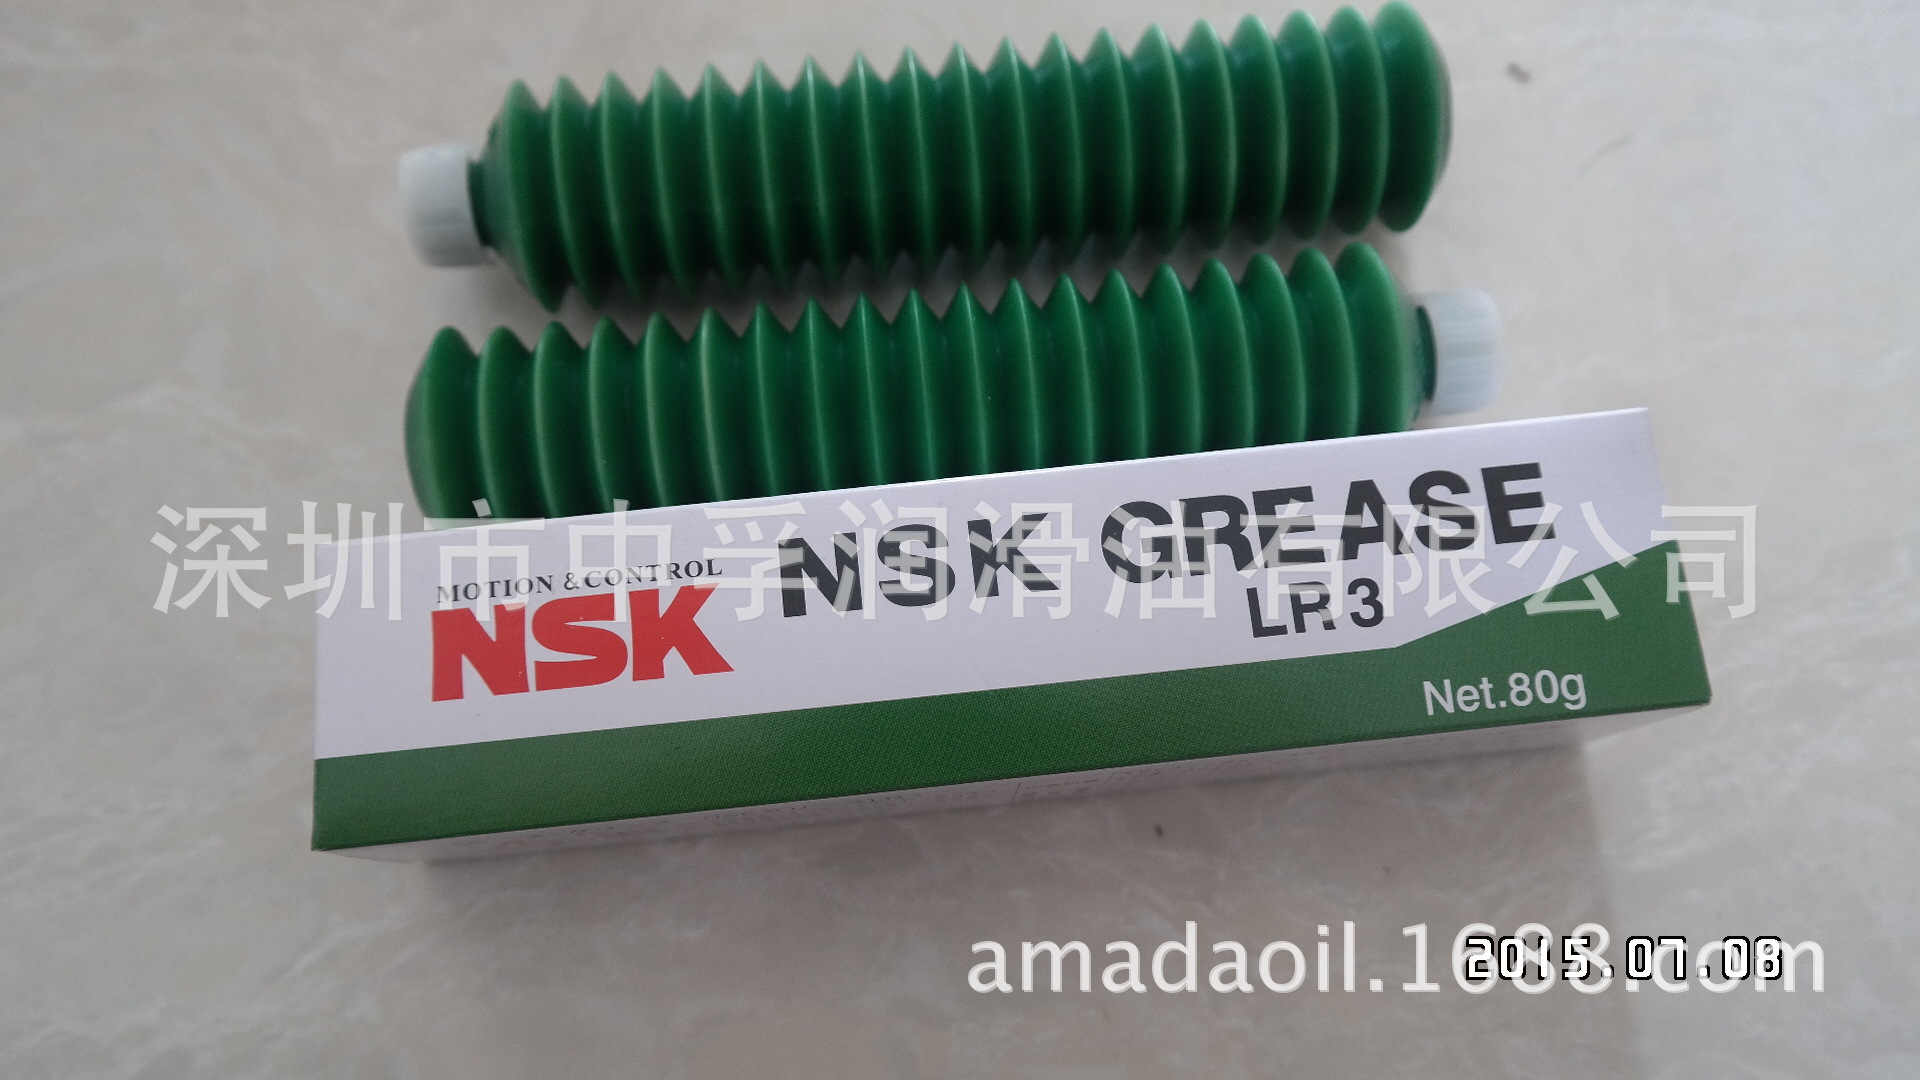 原装日本NSK GREASE LR3 Net.80g导轨滑块润滑脂